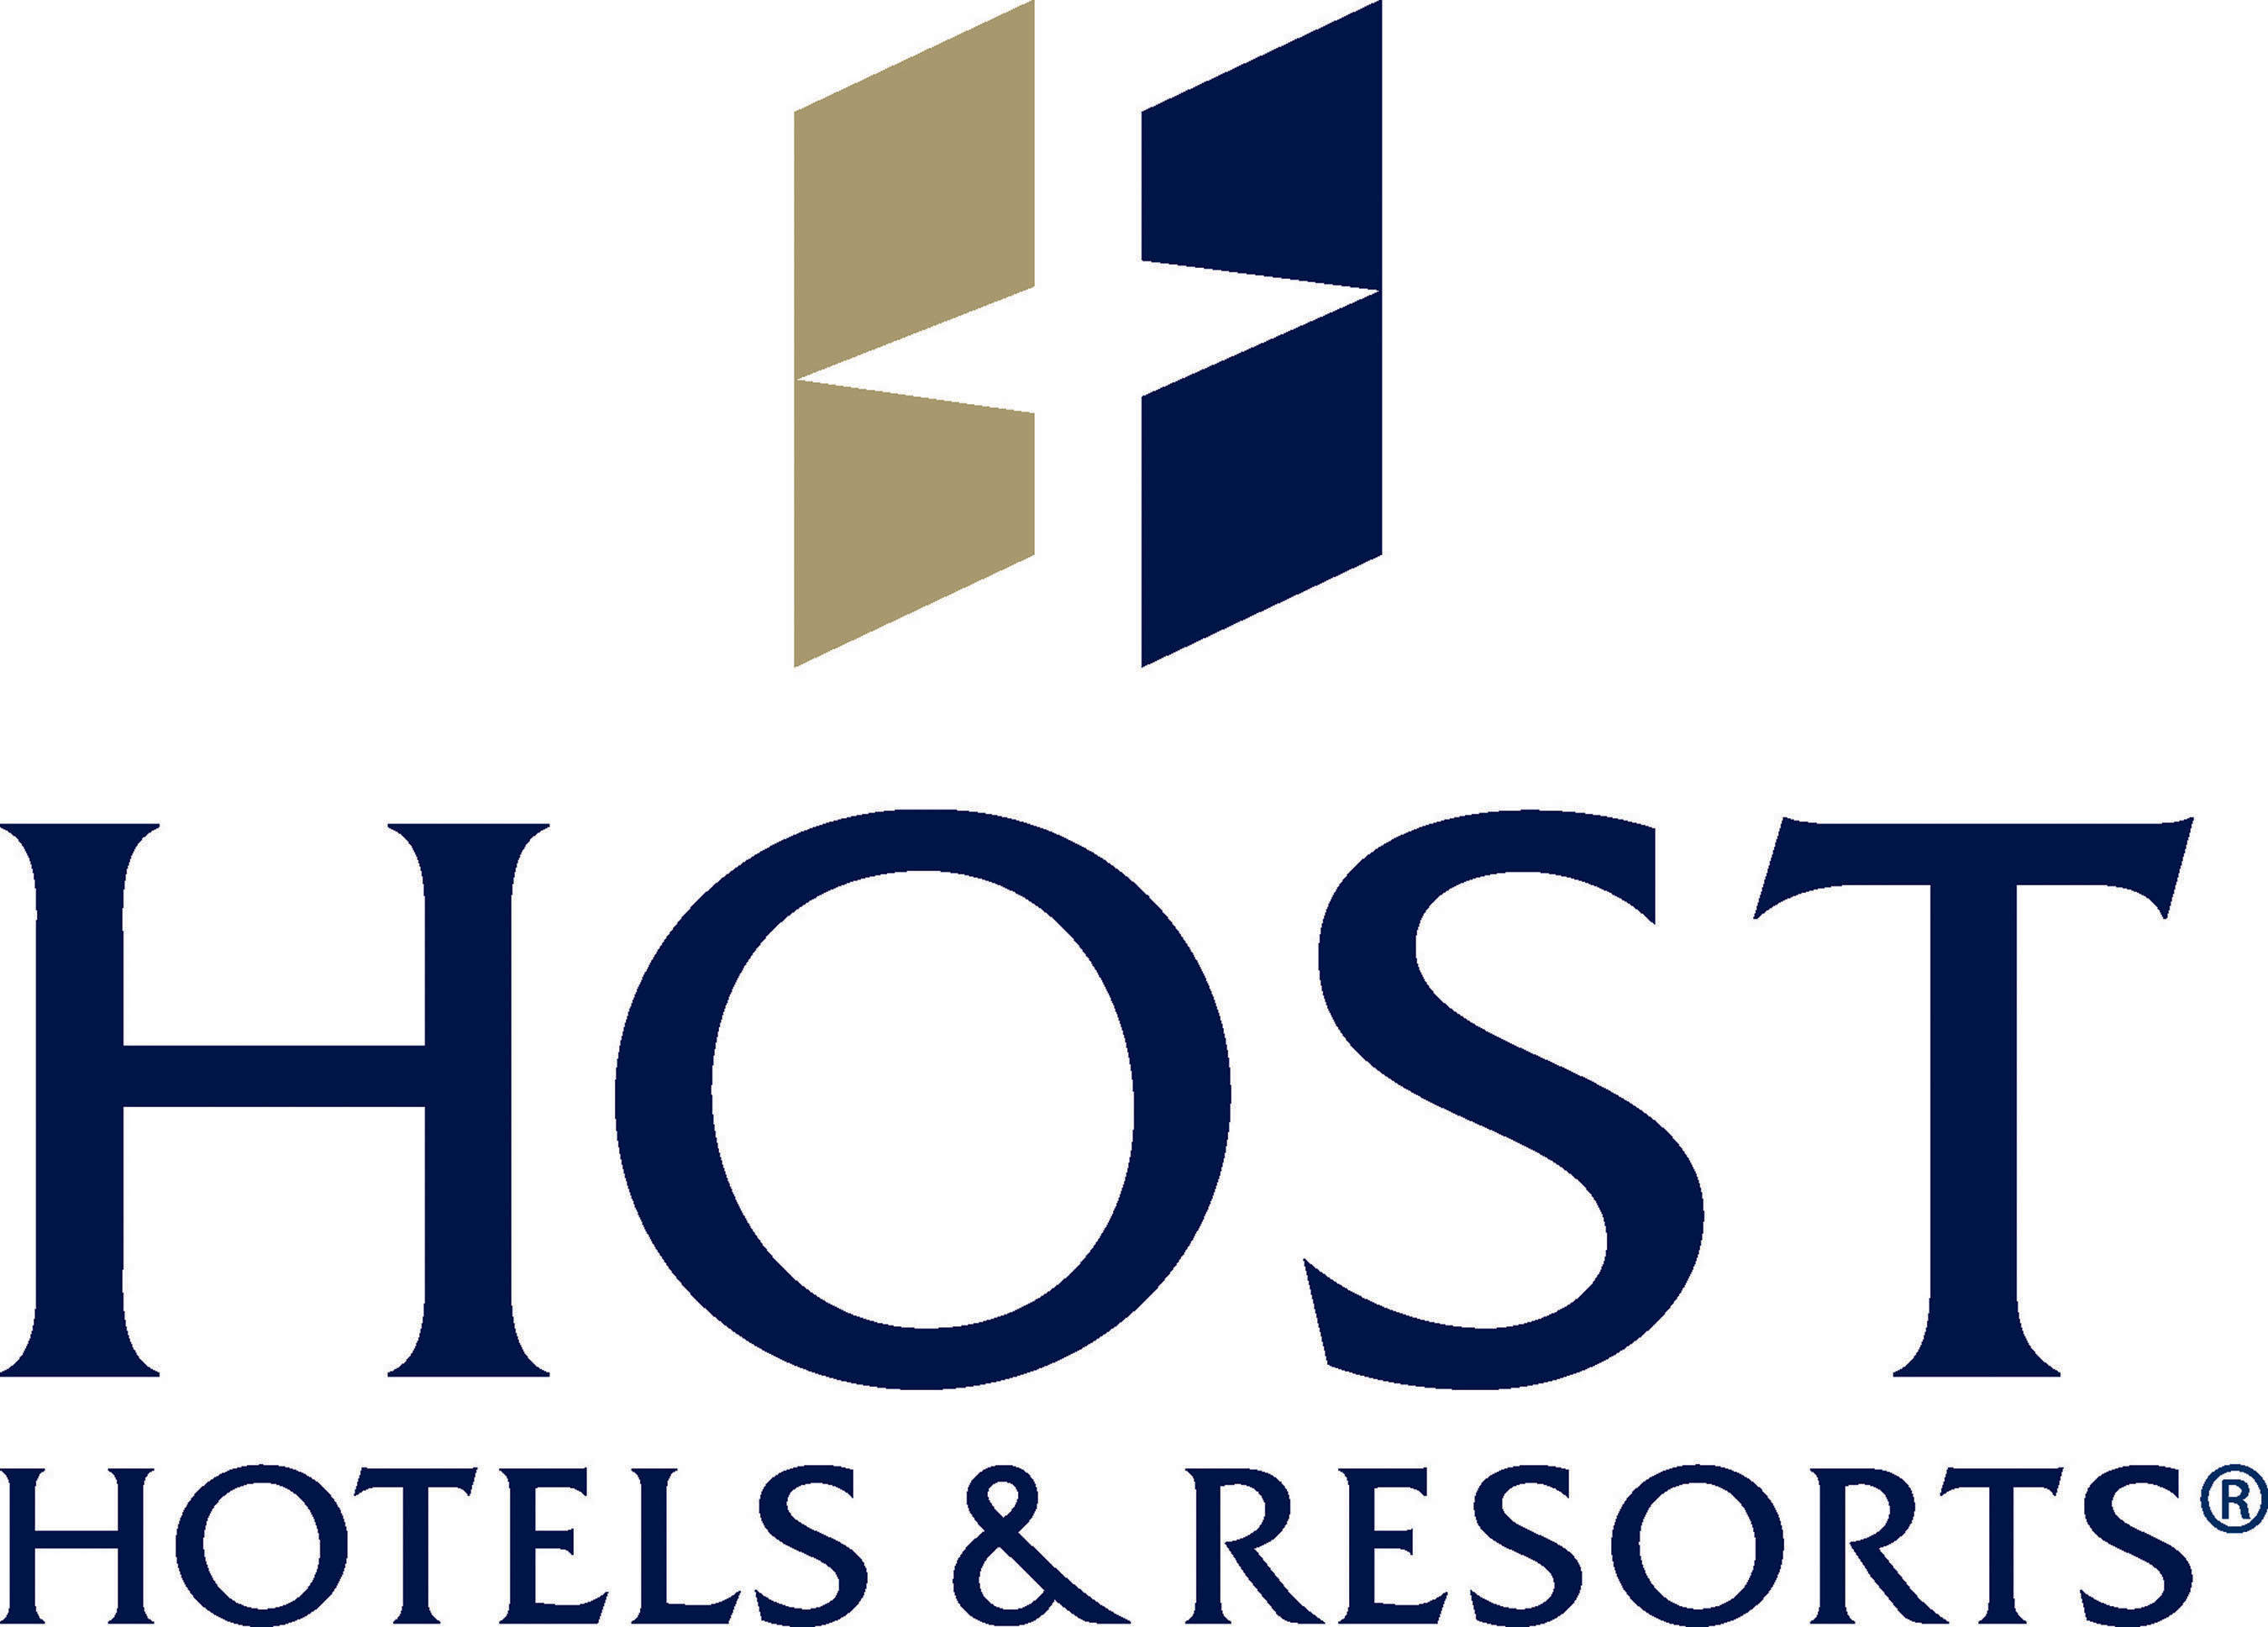 Host Hotels & Resorts, Inc. logo